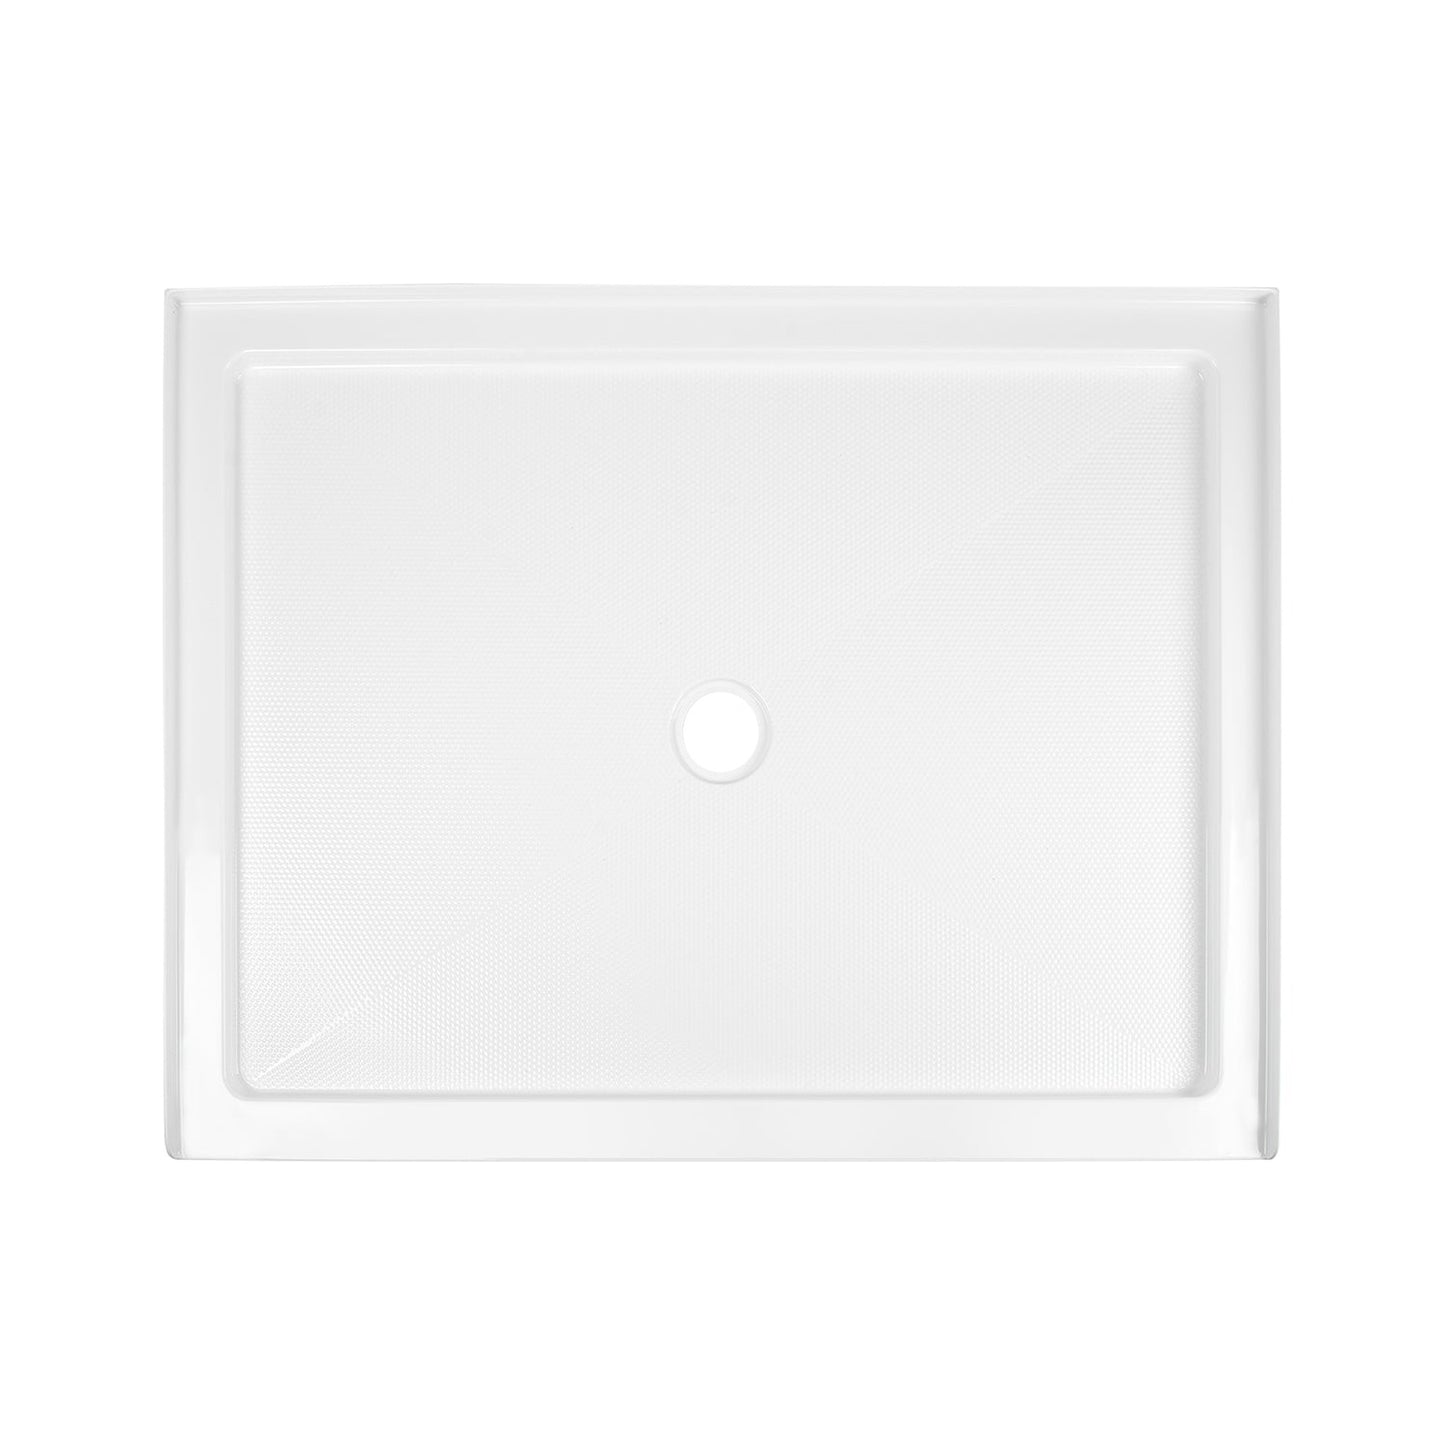 DeerValley DV-1SB0110 48" x 36" Rectangular White Non-slip Design Shower Base